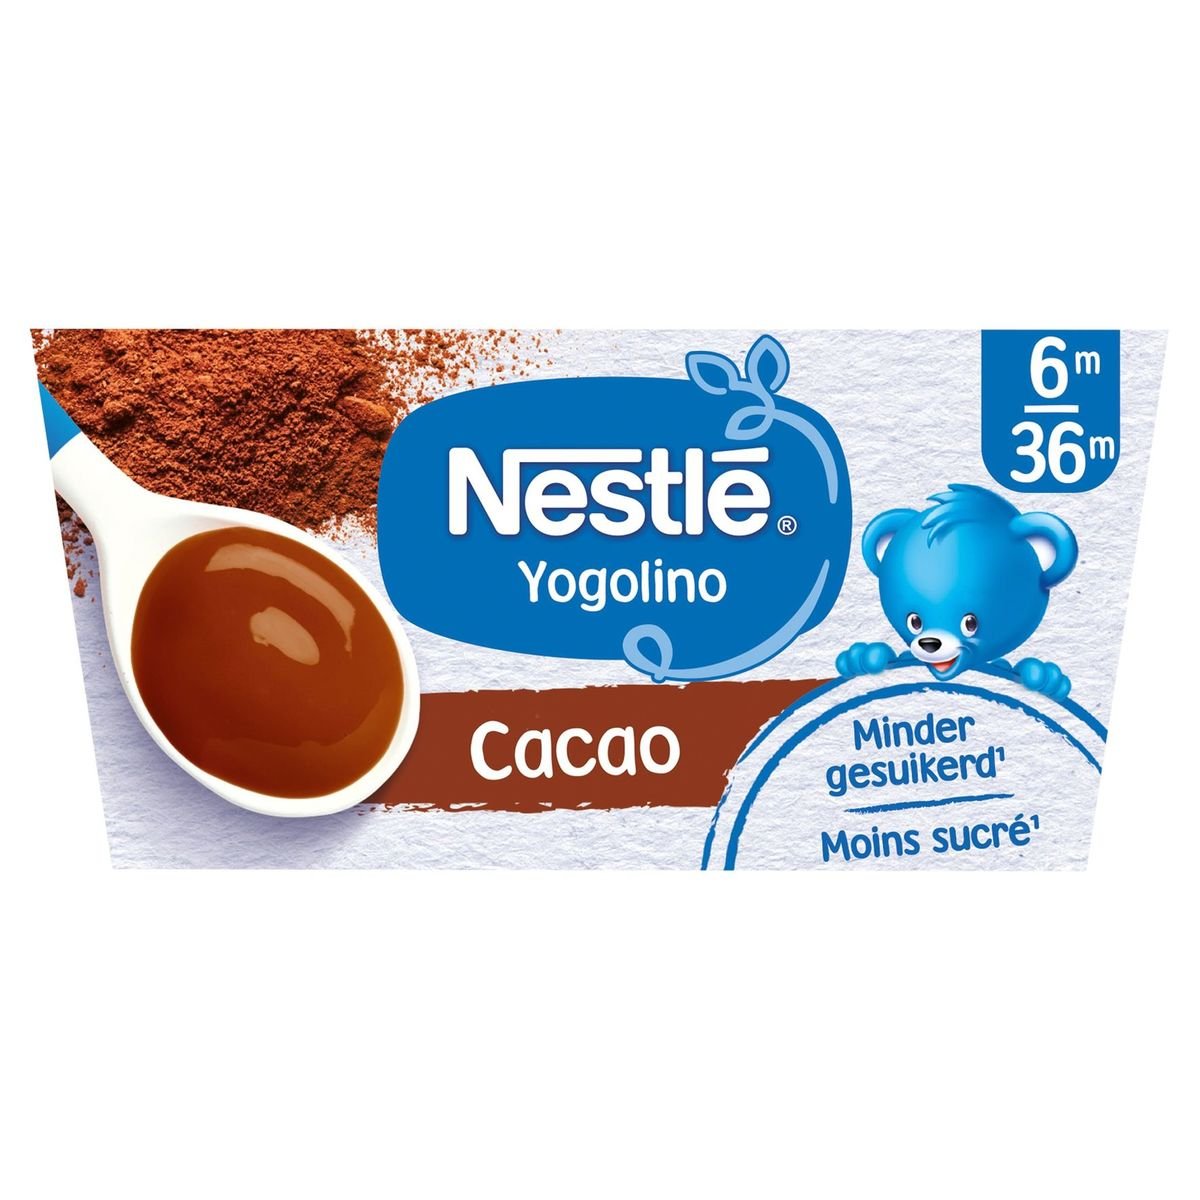 Nestlé Yogolino Cacao 6M 36M 4 x 100 g